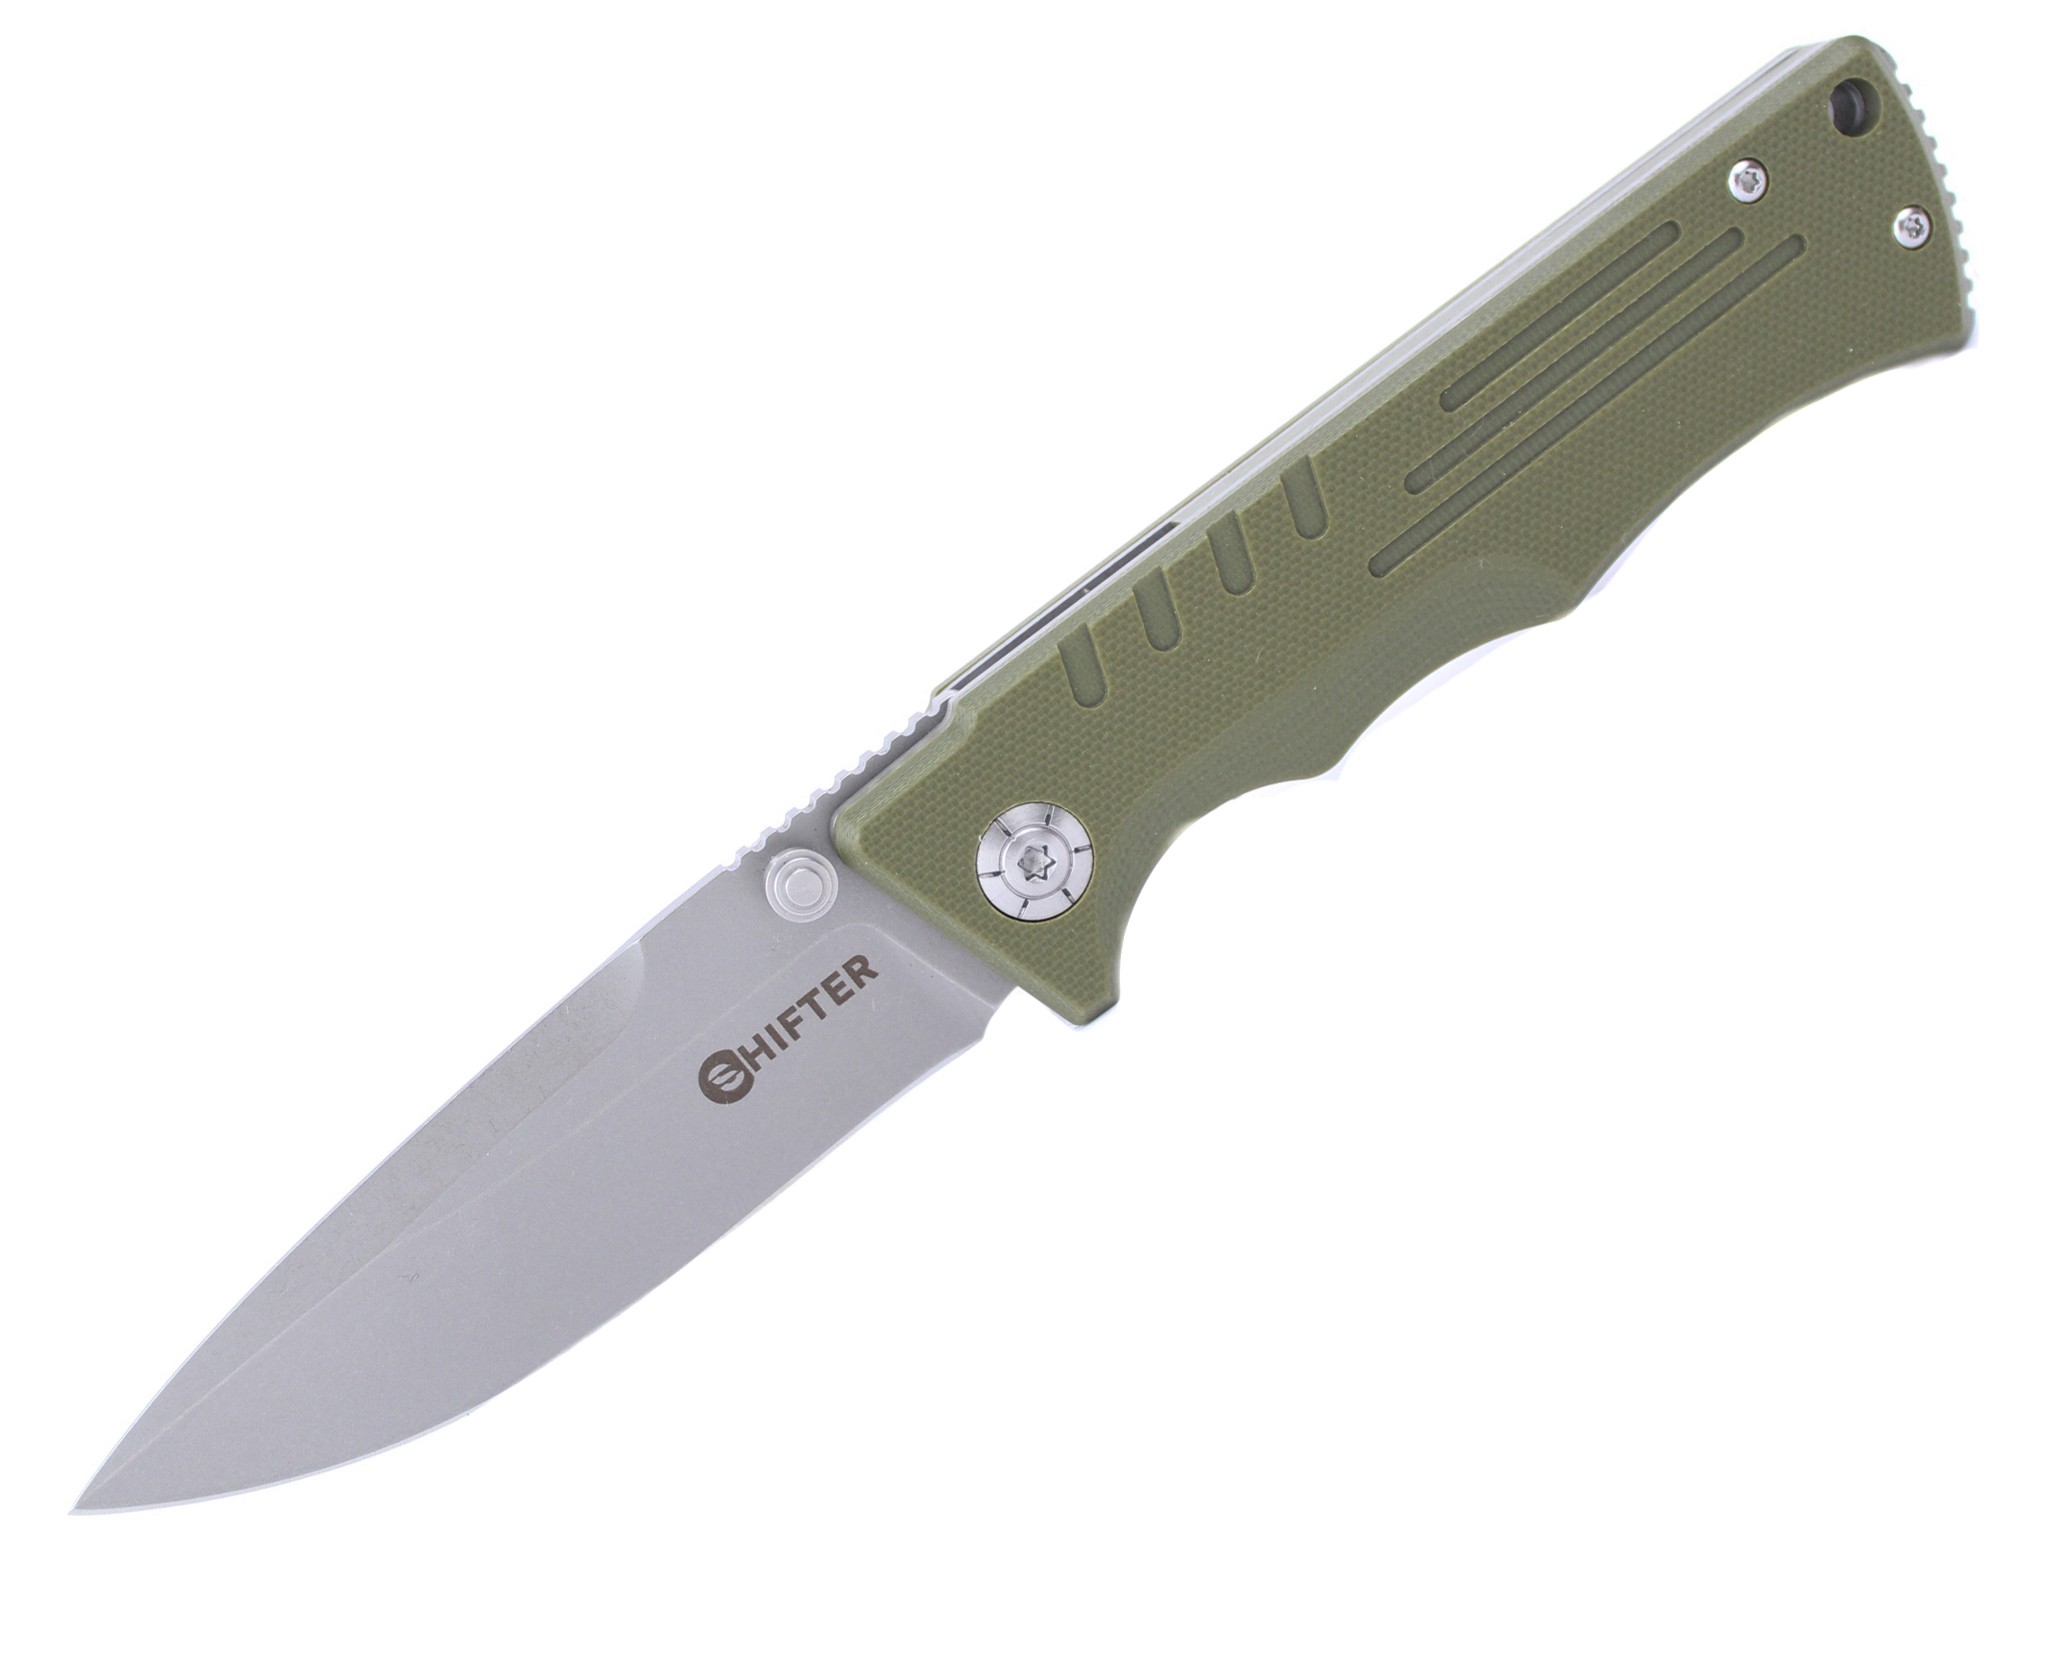 Нож Mr.Blade Split складной green - фото 1